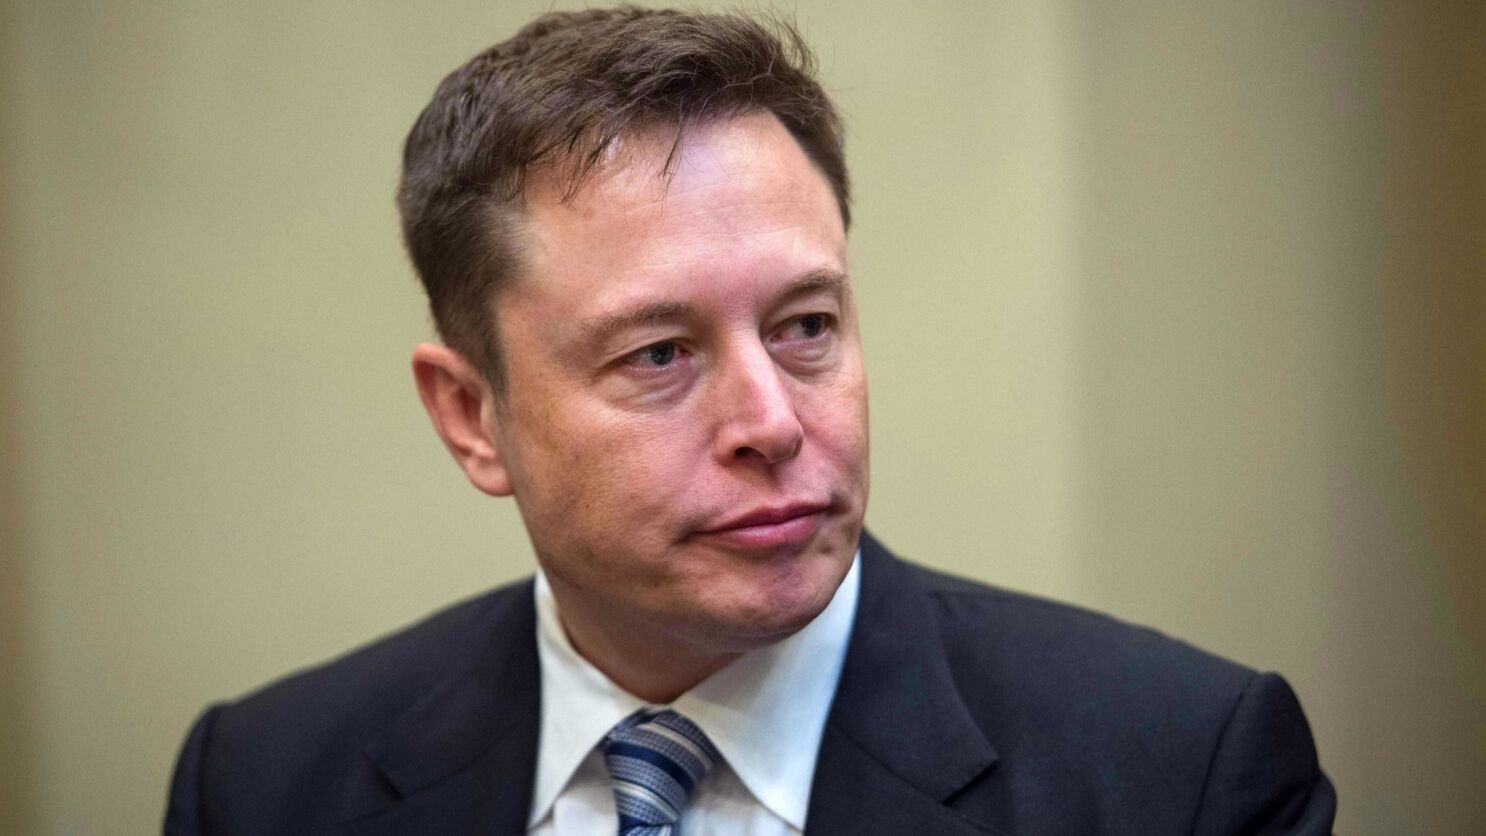 Elon Musk Cases, एक बार फिर चर्चा में एलन मस्क, ट्विट के जरिये धोखाधड़ी .....